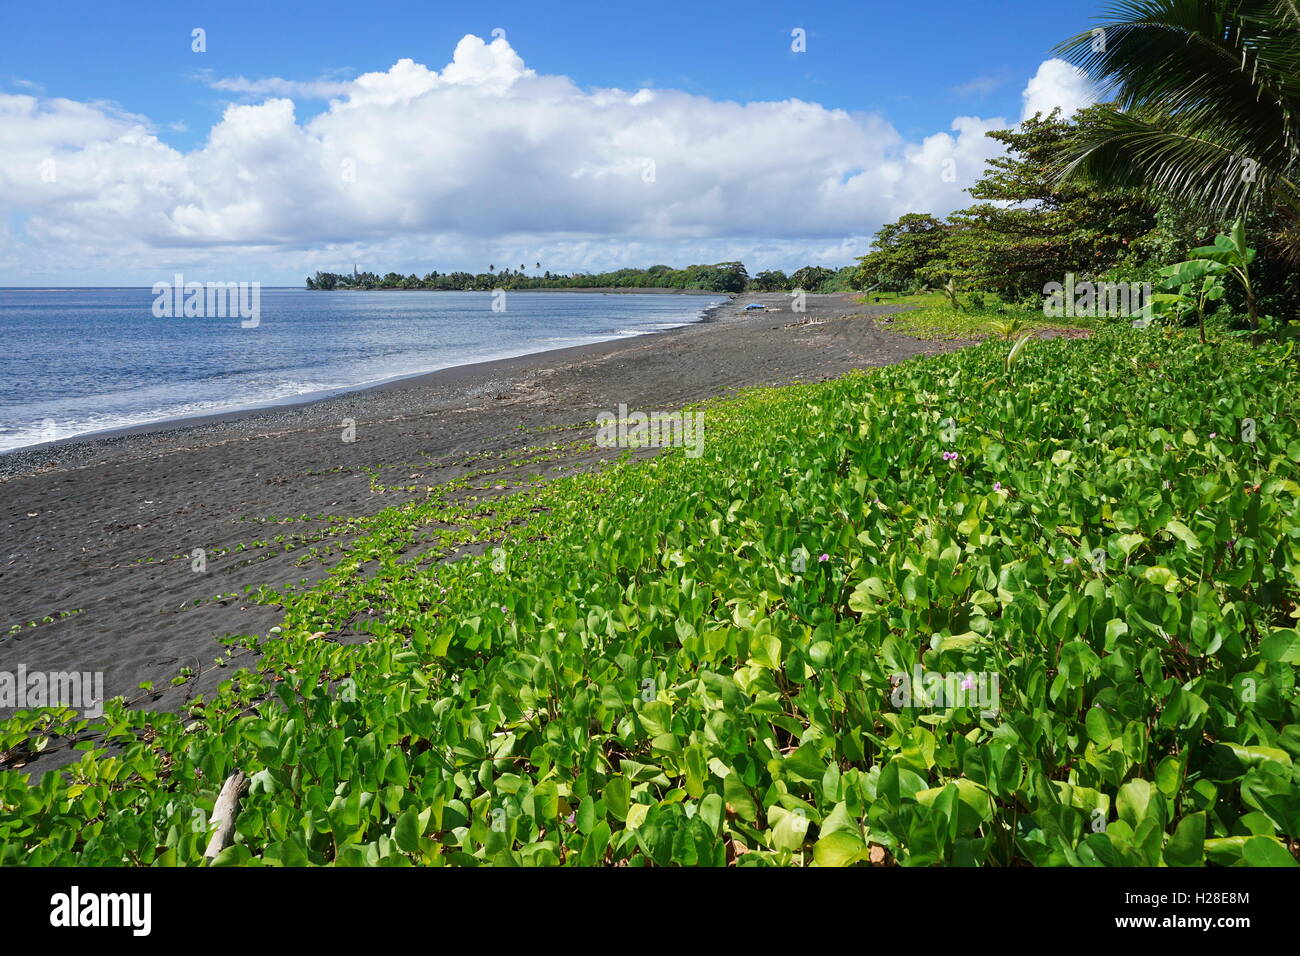 Vegetazione (Ipomoea pes-caprae) su una spiaggia di sabbia nera di Tahiti isola vicino a villaggio Tautira, Polinesia francese, oceano pacifico Foto Stock